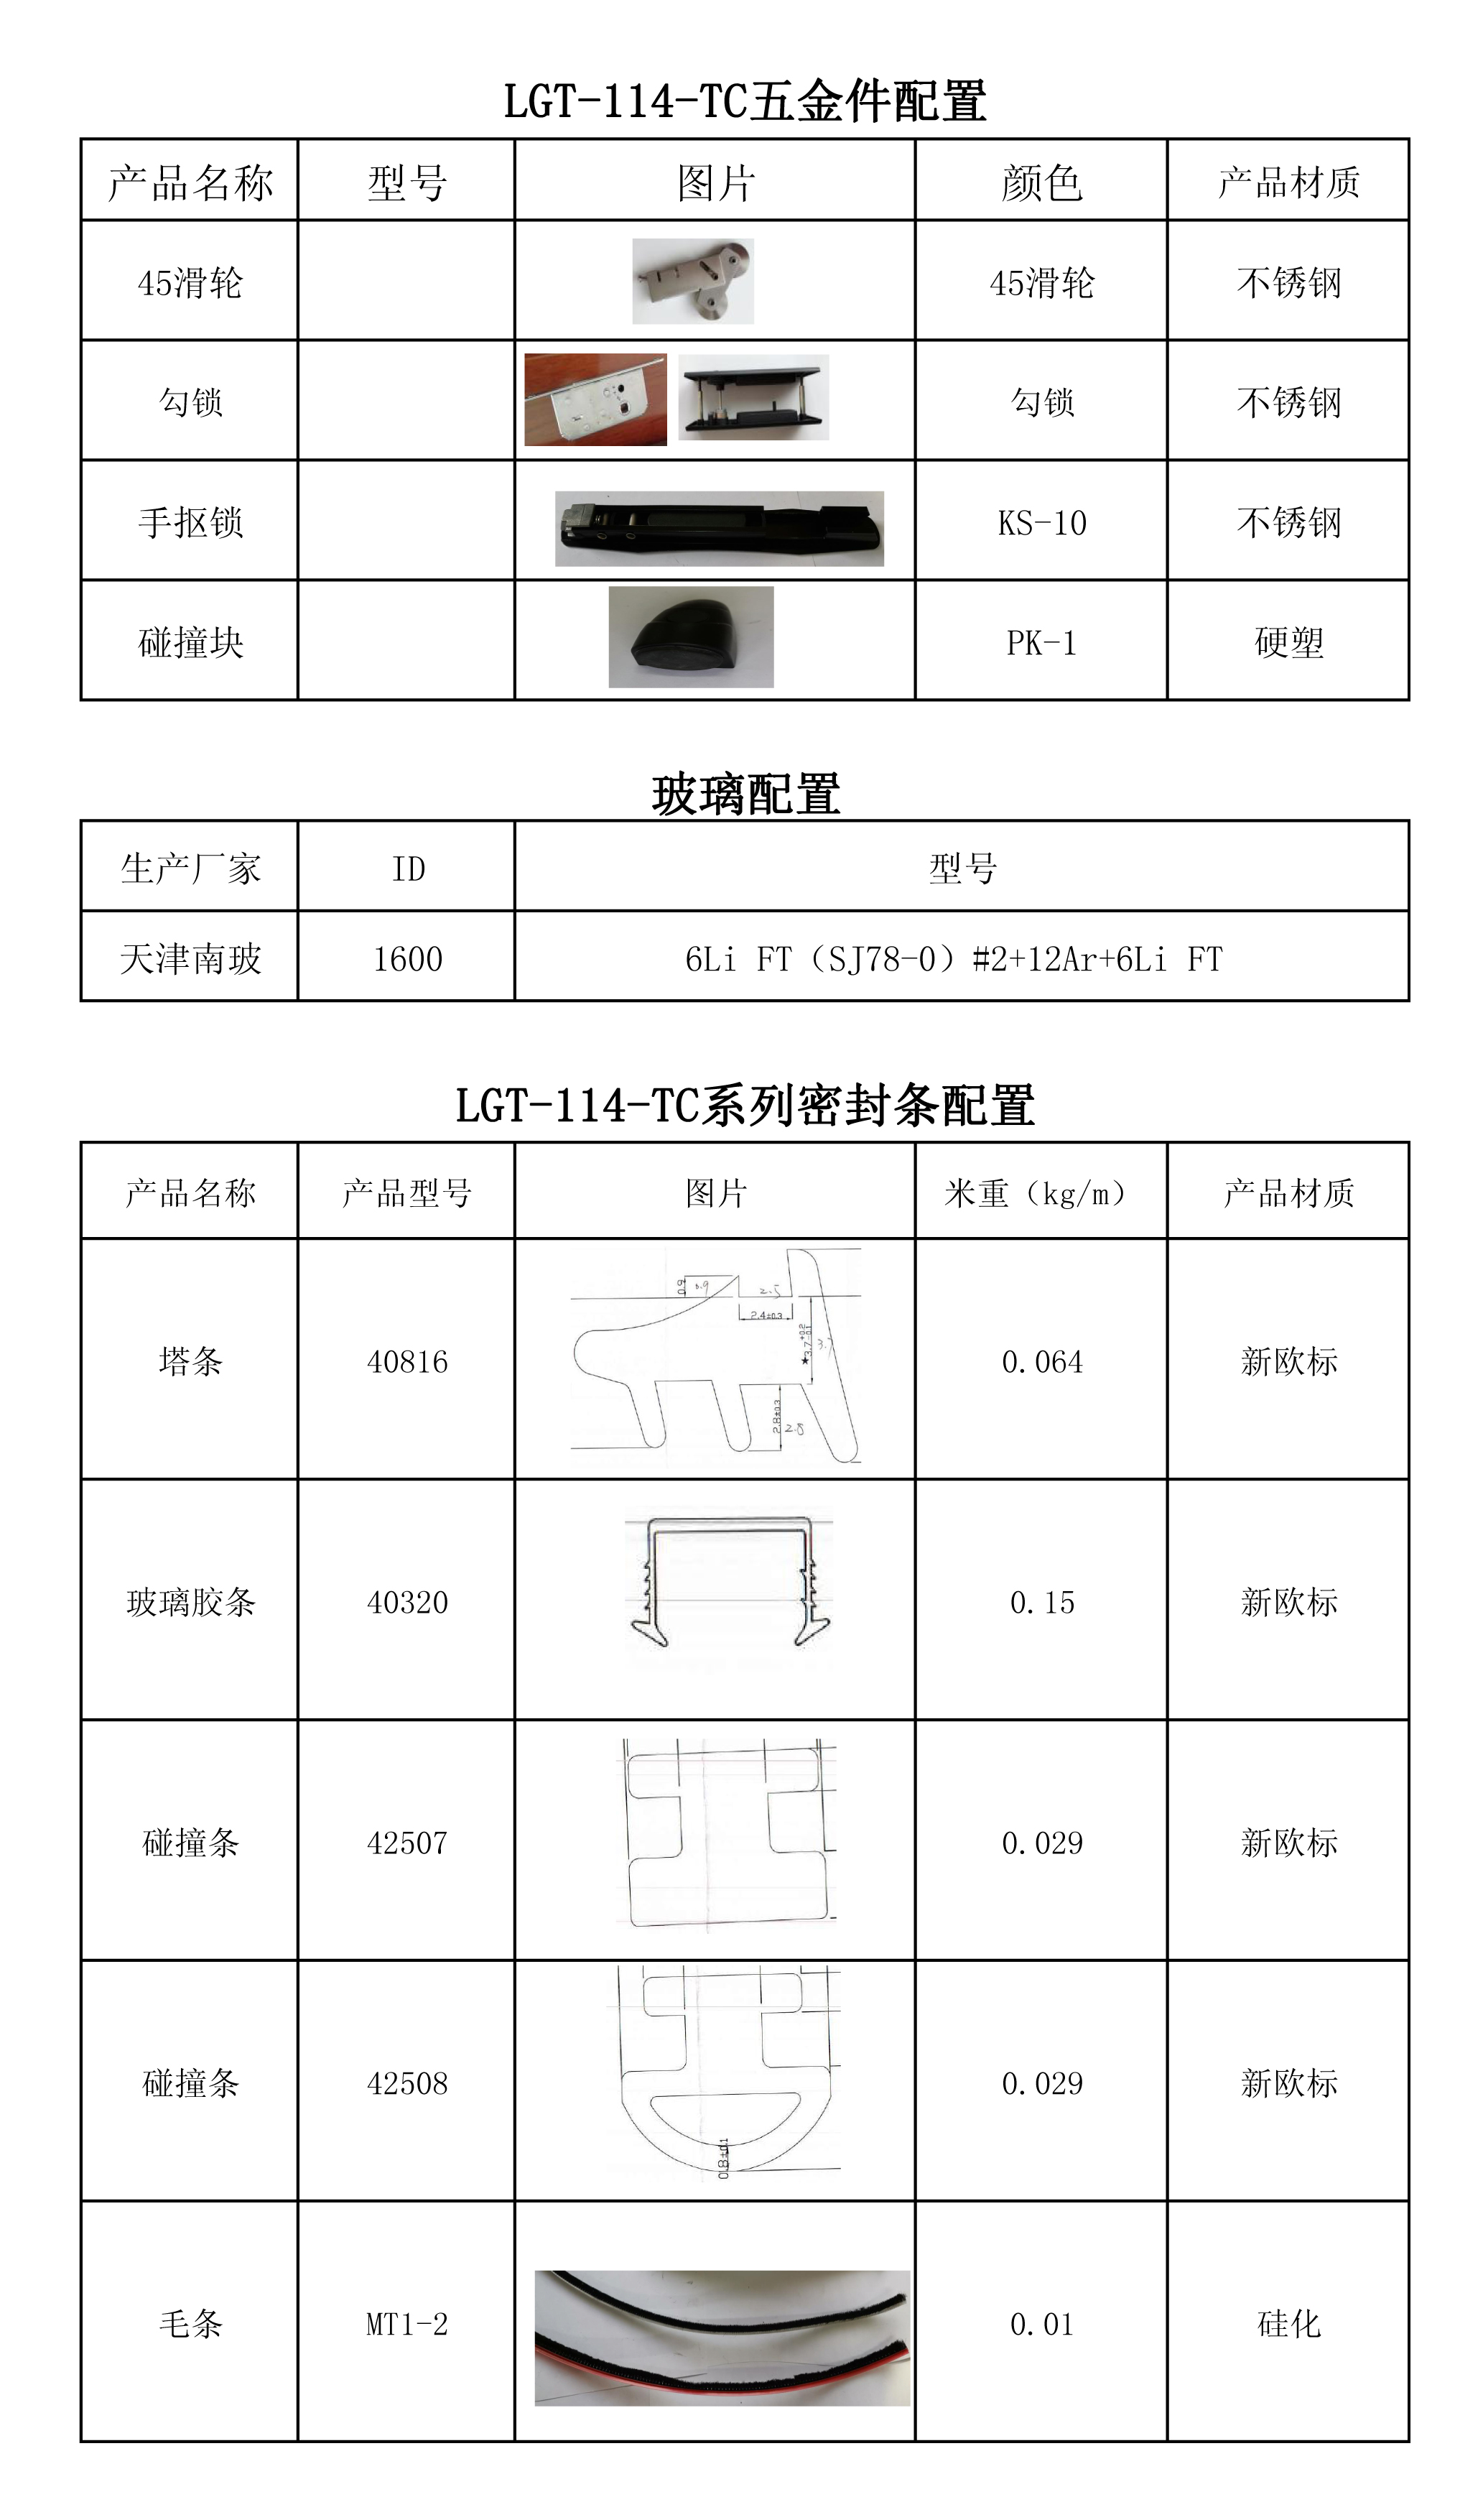 LGT-114-TC系列配置 表.jpg